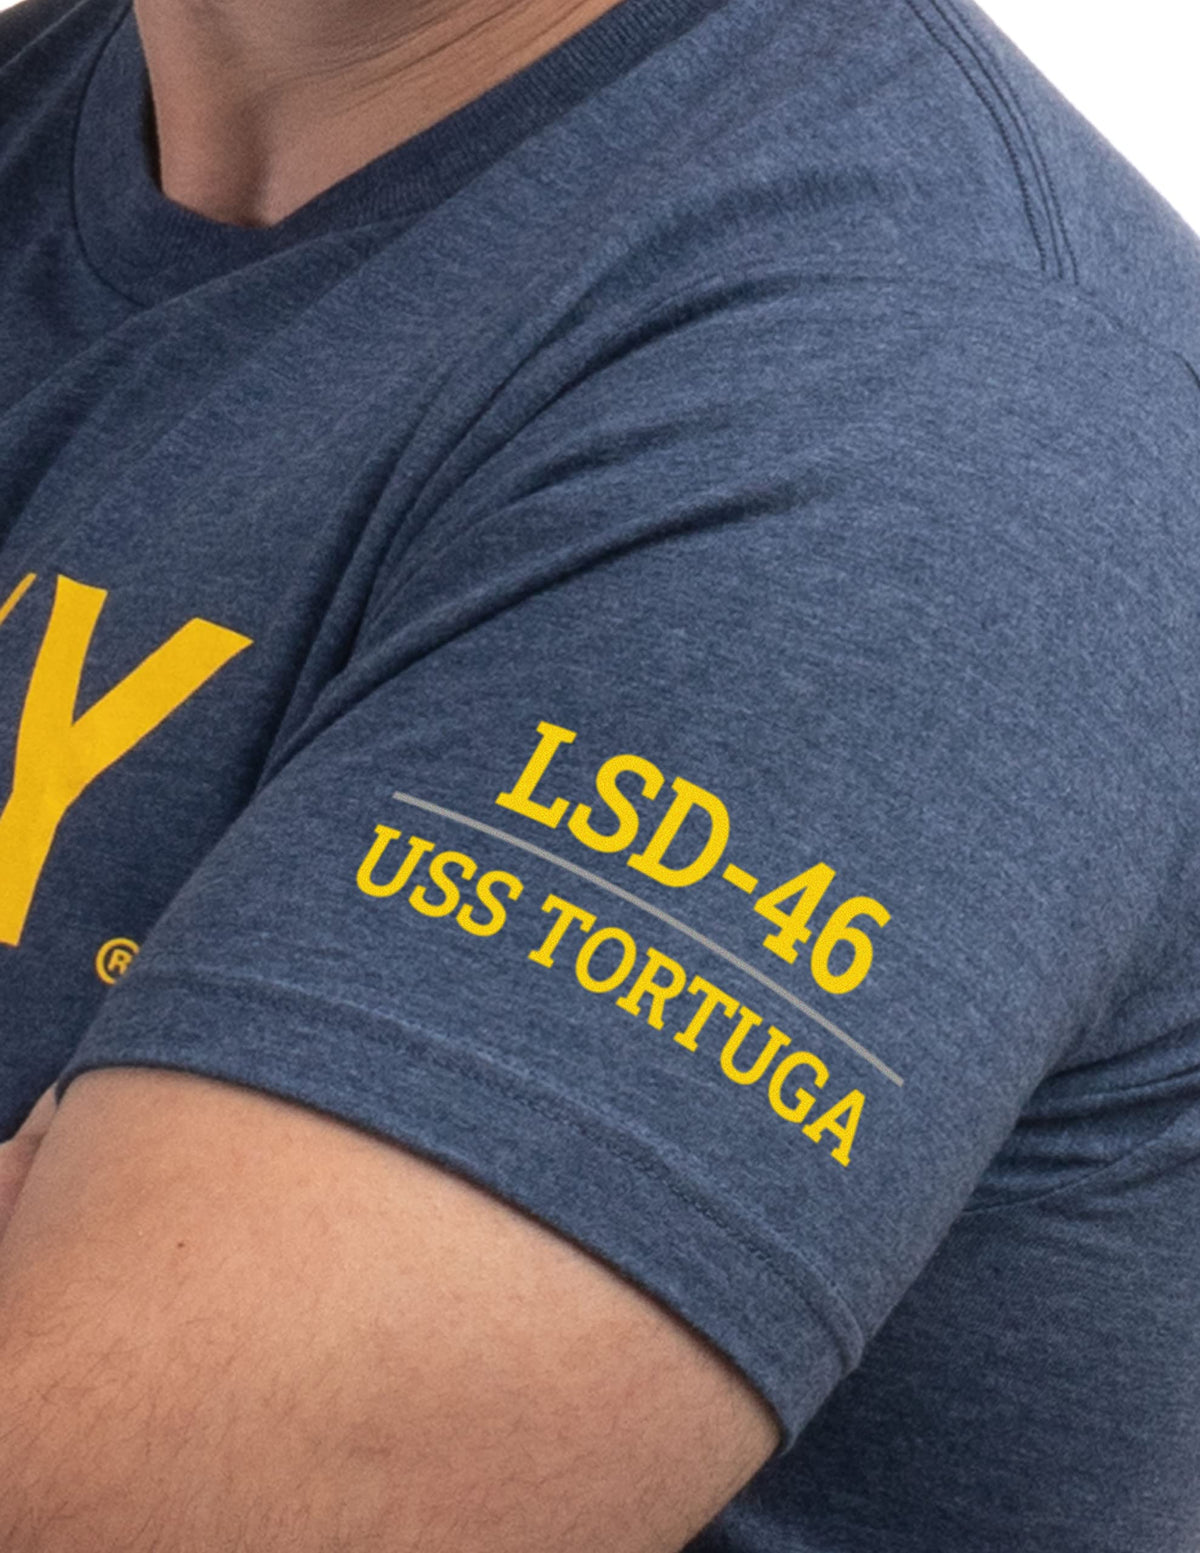 USS Tortuga, LSD-46 | U.S. Navy Sailor Veteran USN United States Naval T-shirt for Men Women